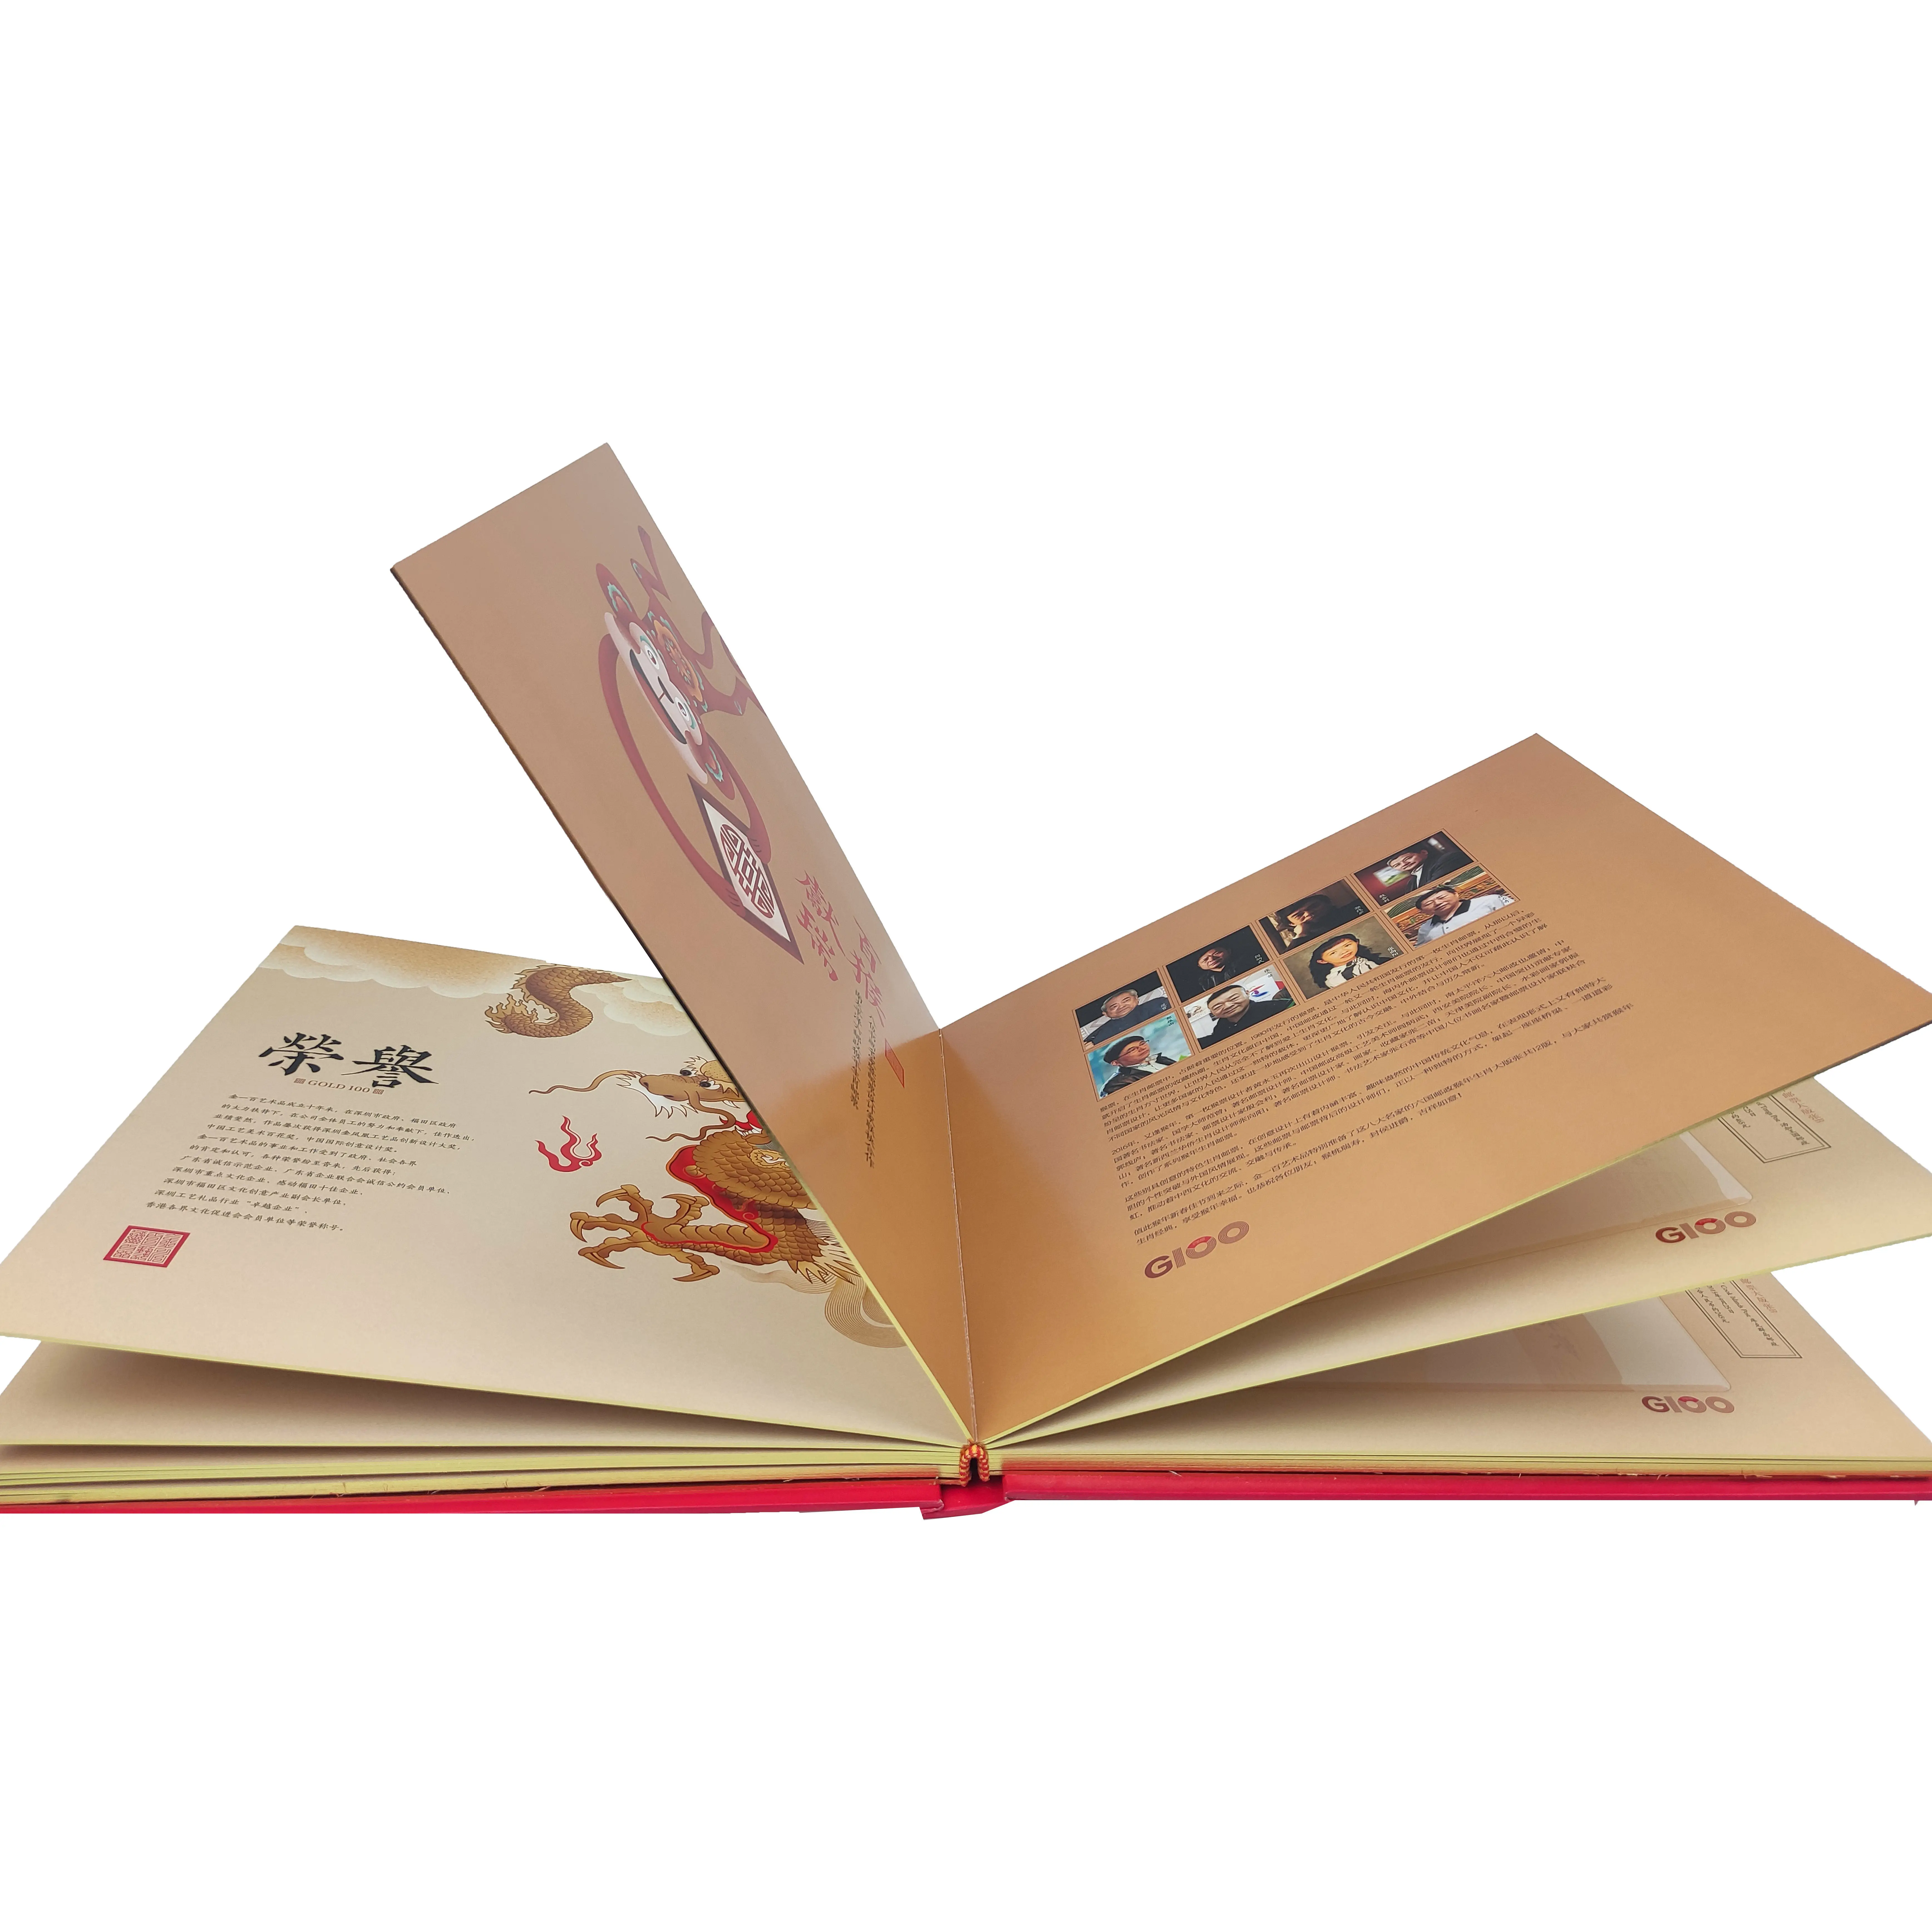 Fabriek Hoge Kwaliteit Aangepaste Hardcover Boek Afdrukken Service